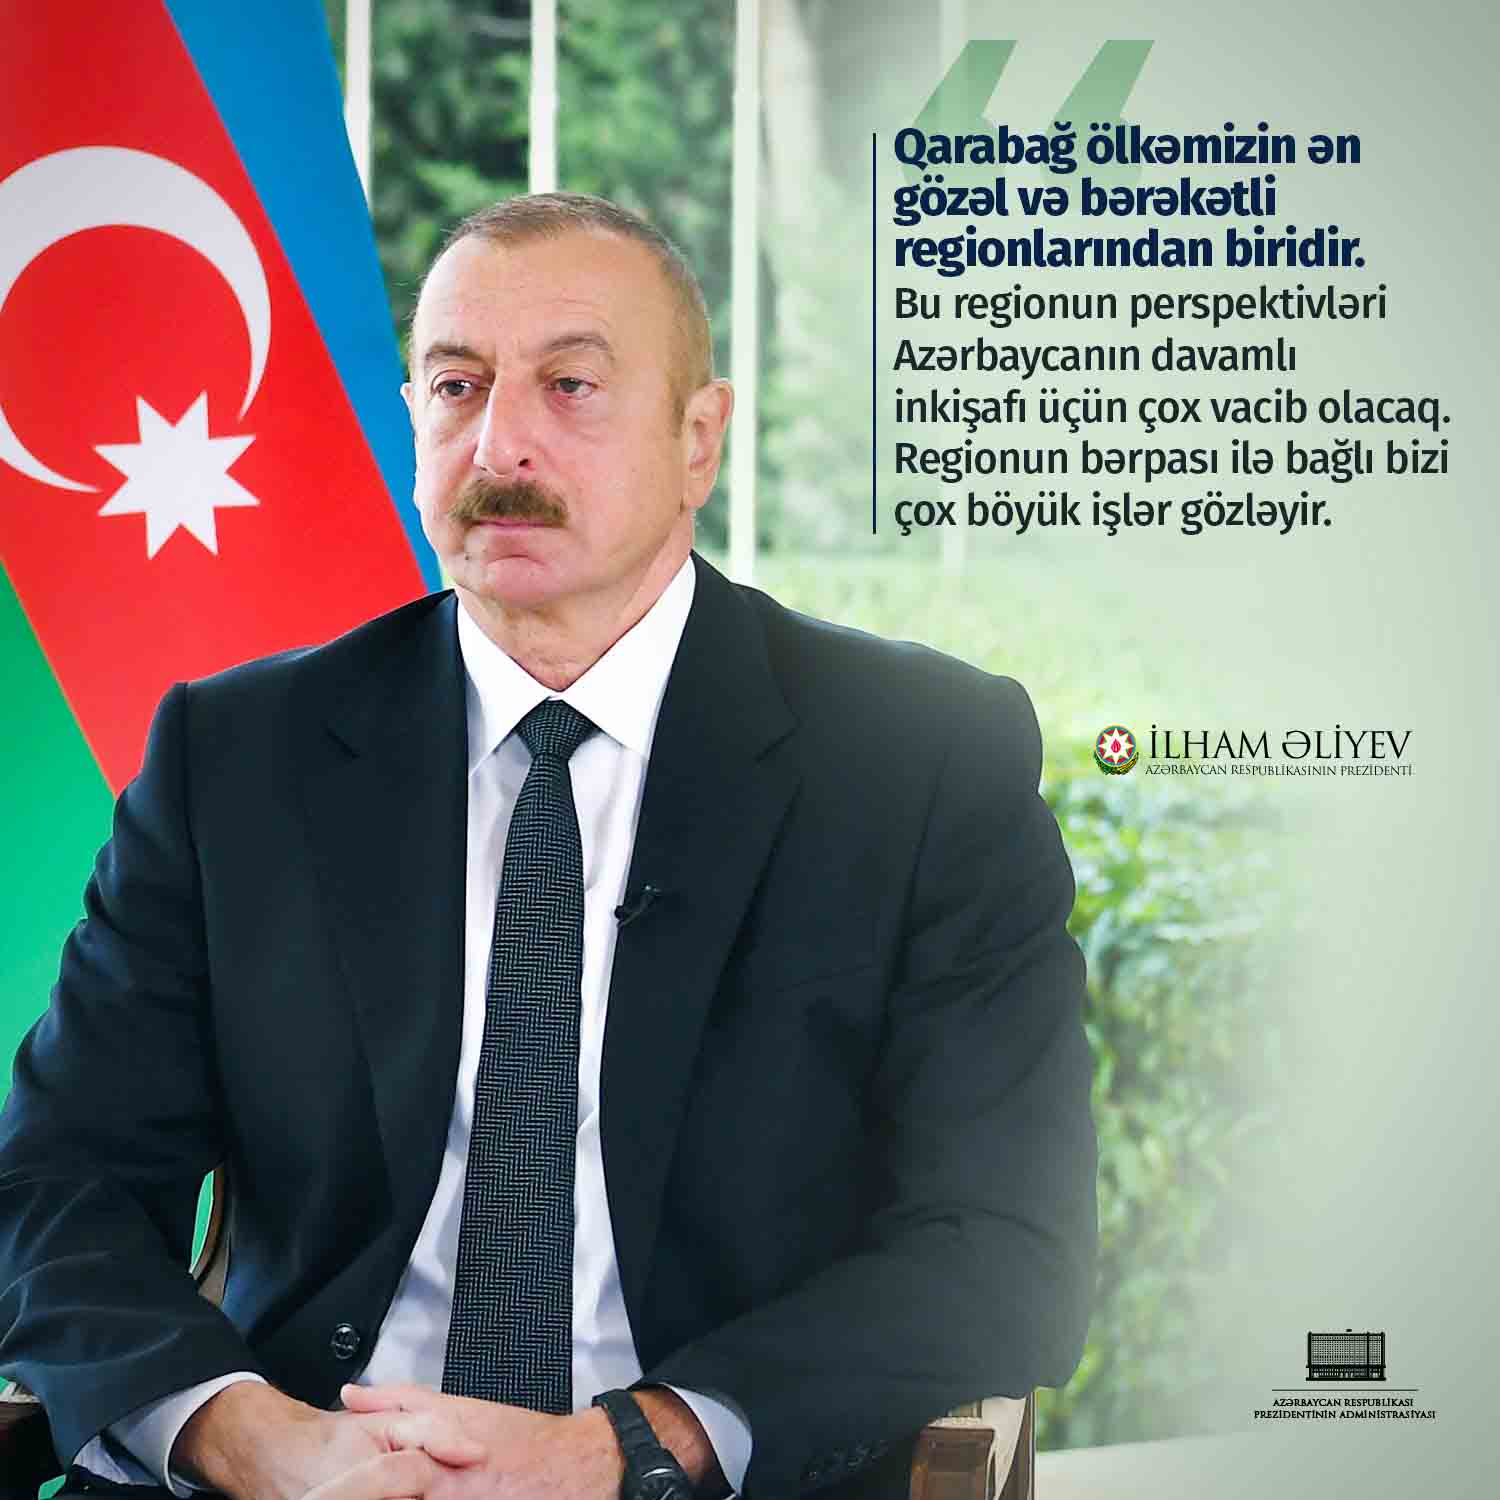 Prezident İlham Əliyevin rəhbərliyi ilə Azərbaycan uğurla inkişaf edir